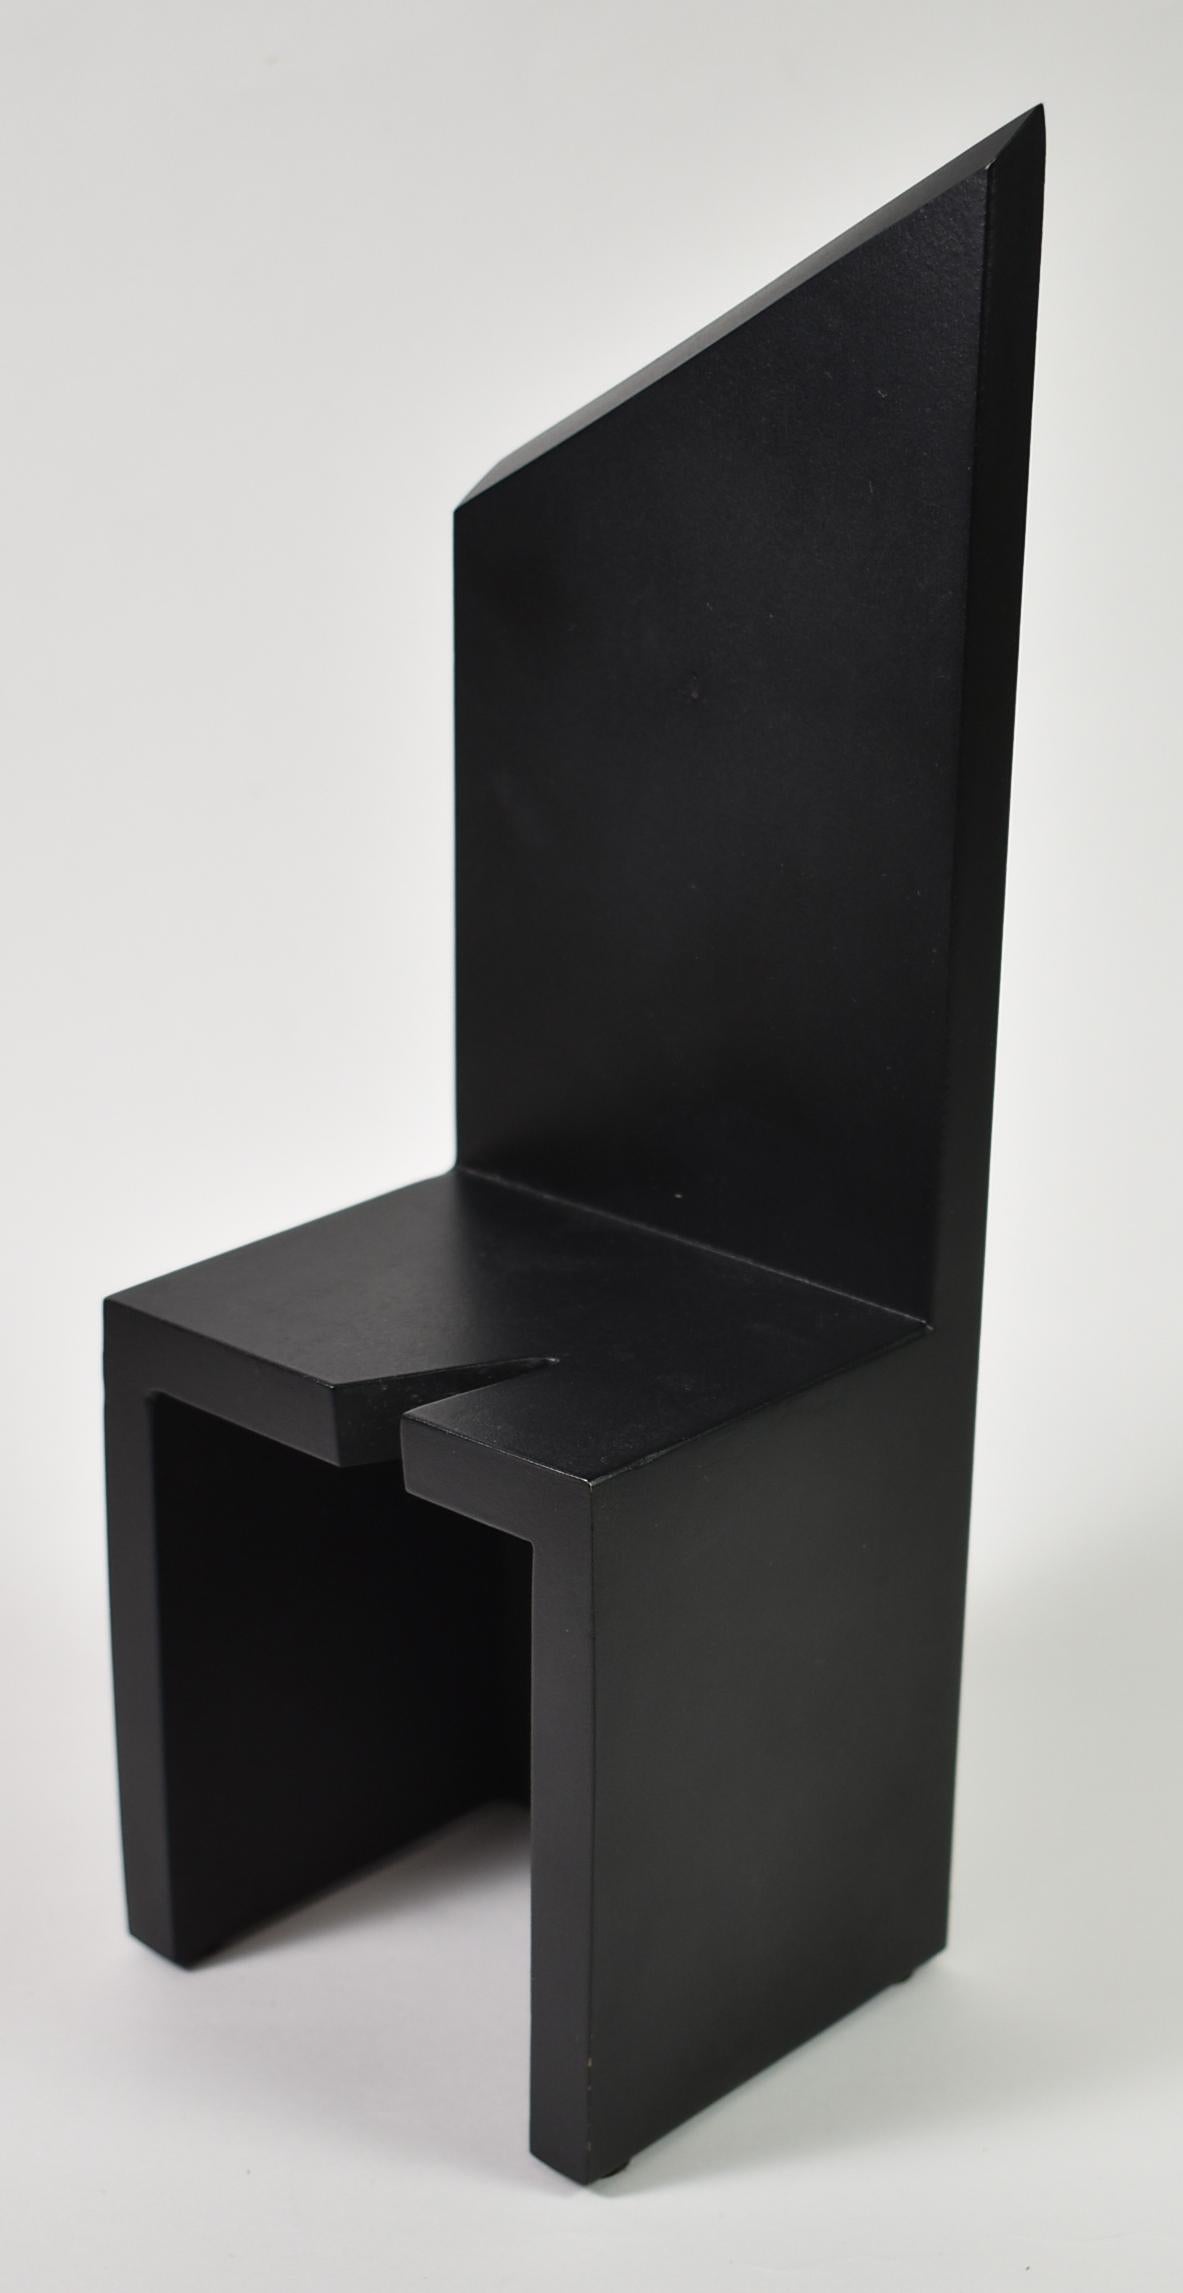 Schwarze Eisenskulptur von Lois Teicher, einer Künstlerin aus Detroit, Michigan. Die Skulptur von 1992 ist signiert, datiert und nummeriert 4/12. Lois Teicher ist bekannt für ihre großformatigen Stahlskulpturen und war eine von sechzehn Künstlern,